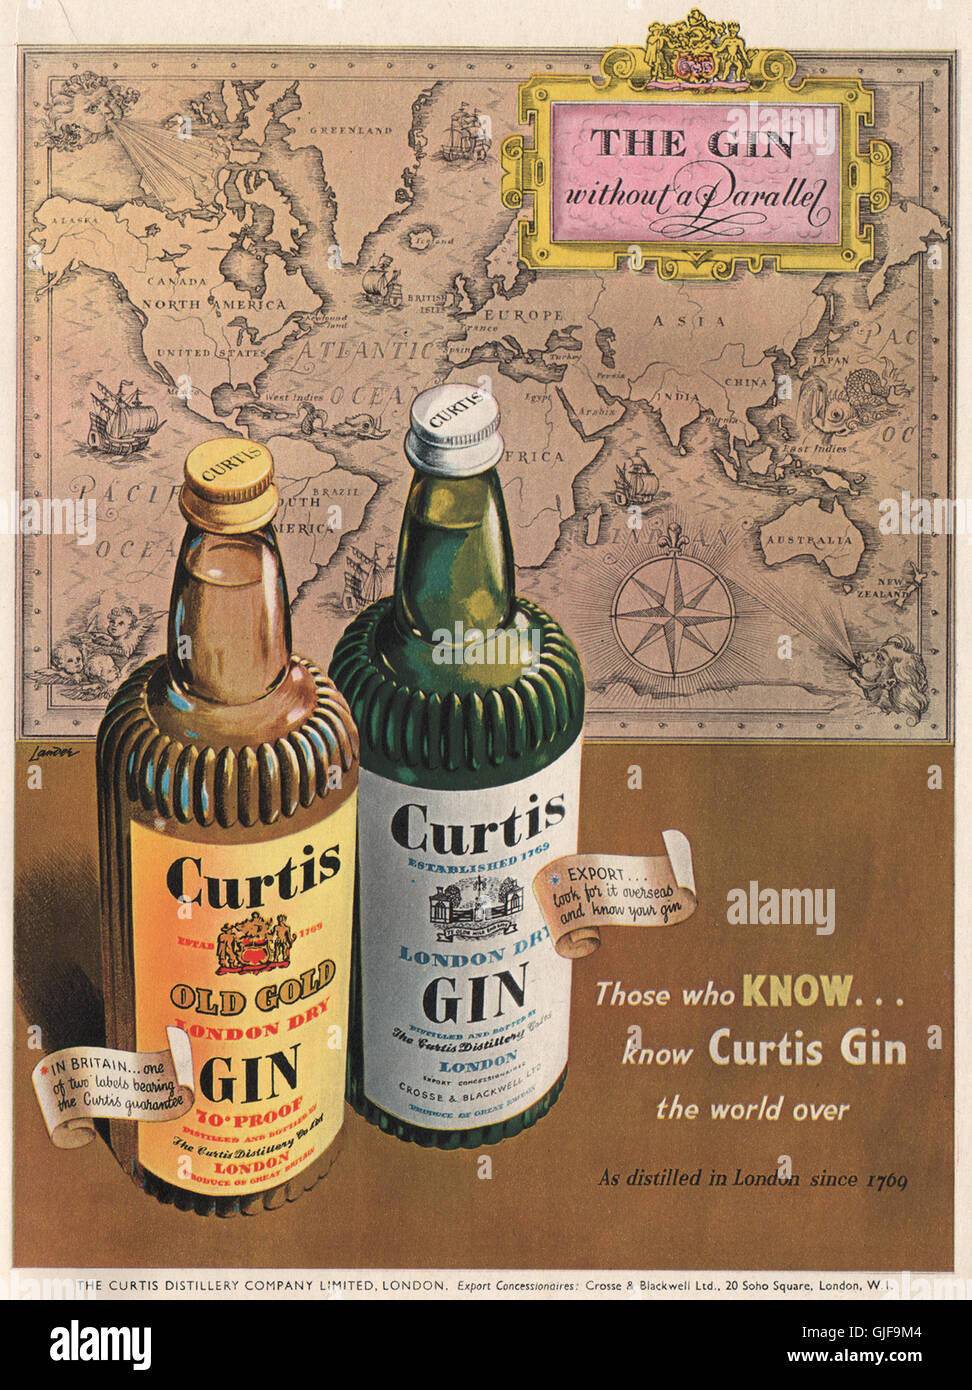 Il gin annuncio. La curtis Distillery Co. Ltd. Oro vecchio London dry gin, stampa 1951 Foto Stock